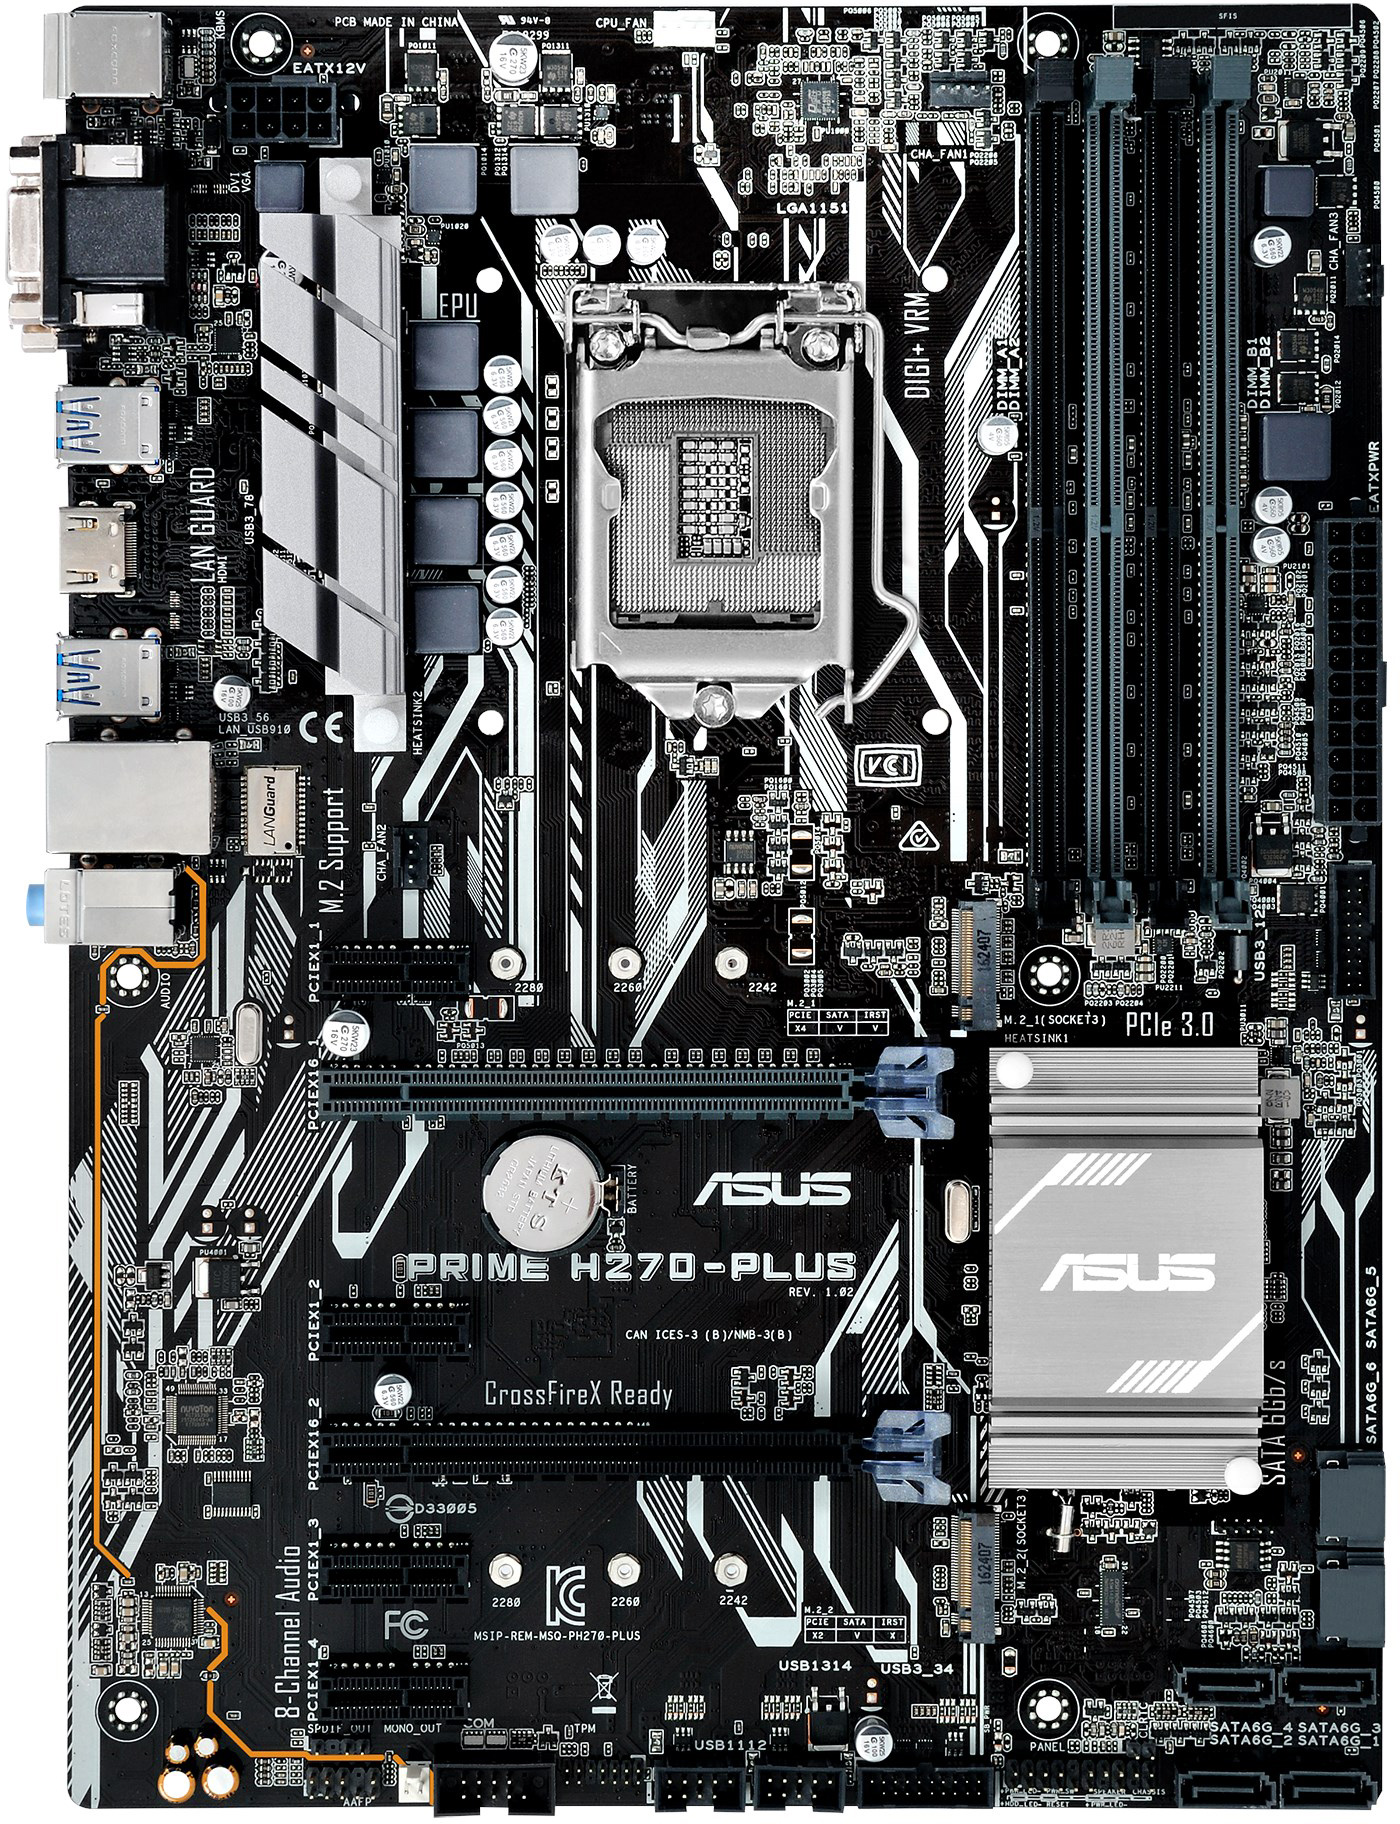 Asus Prime H270-Plus GPU